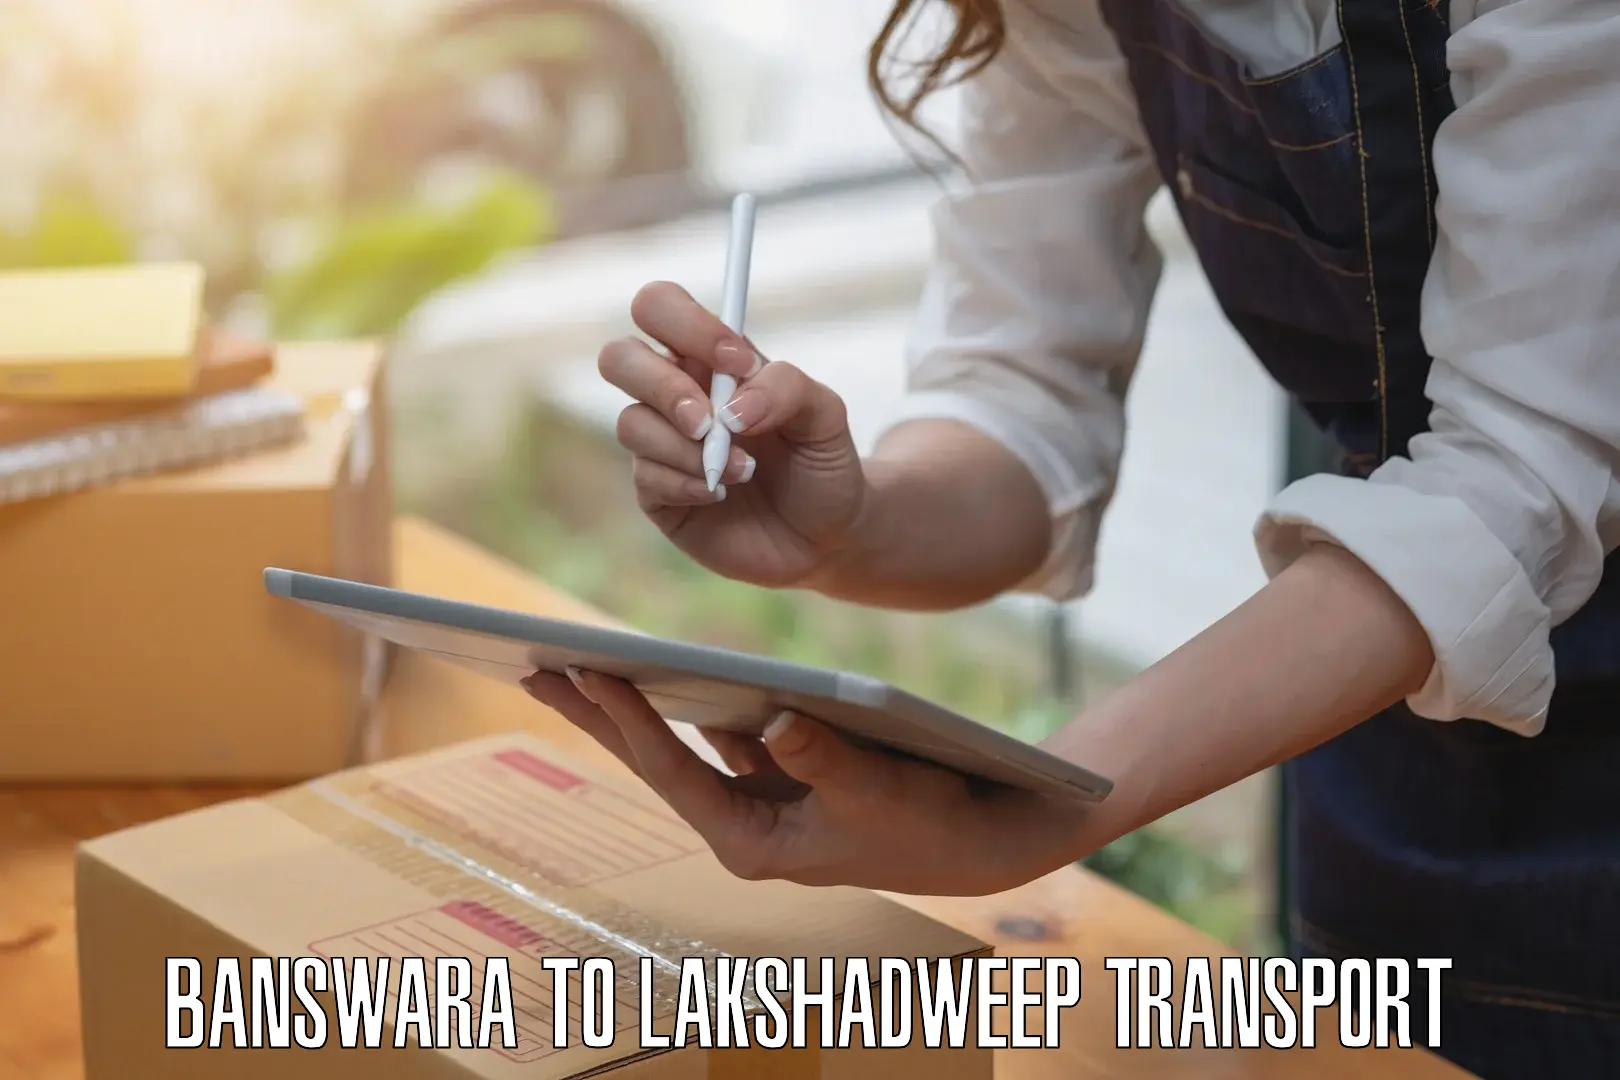 Delivery service Banswara to Lakshadweep